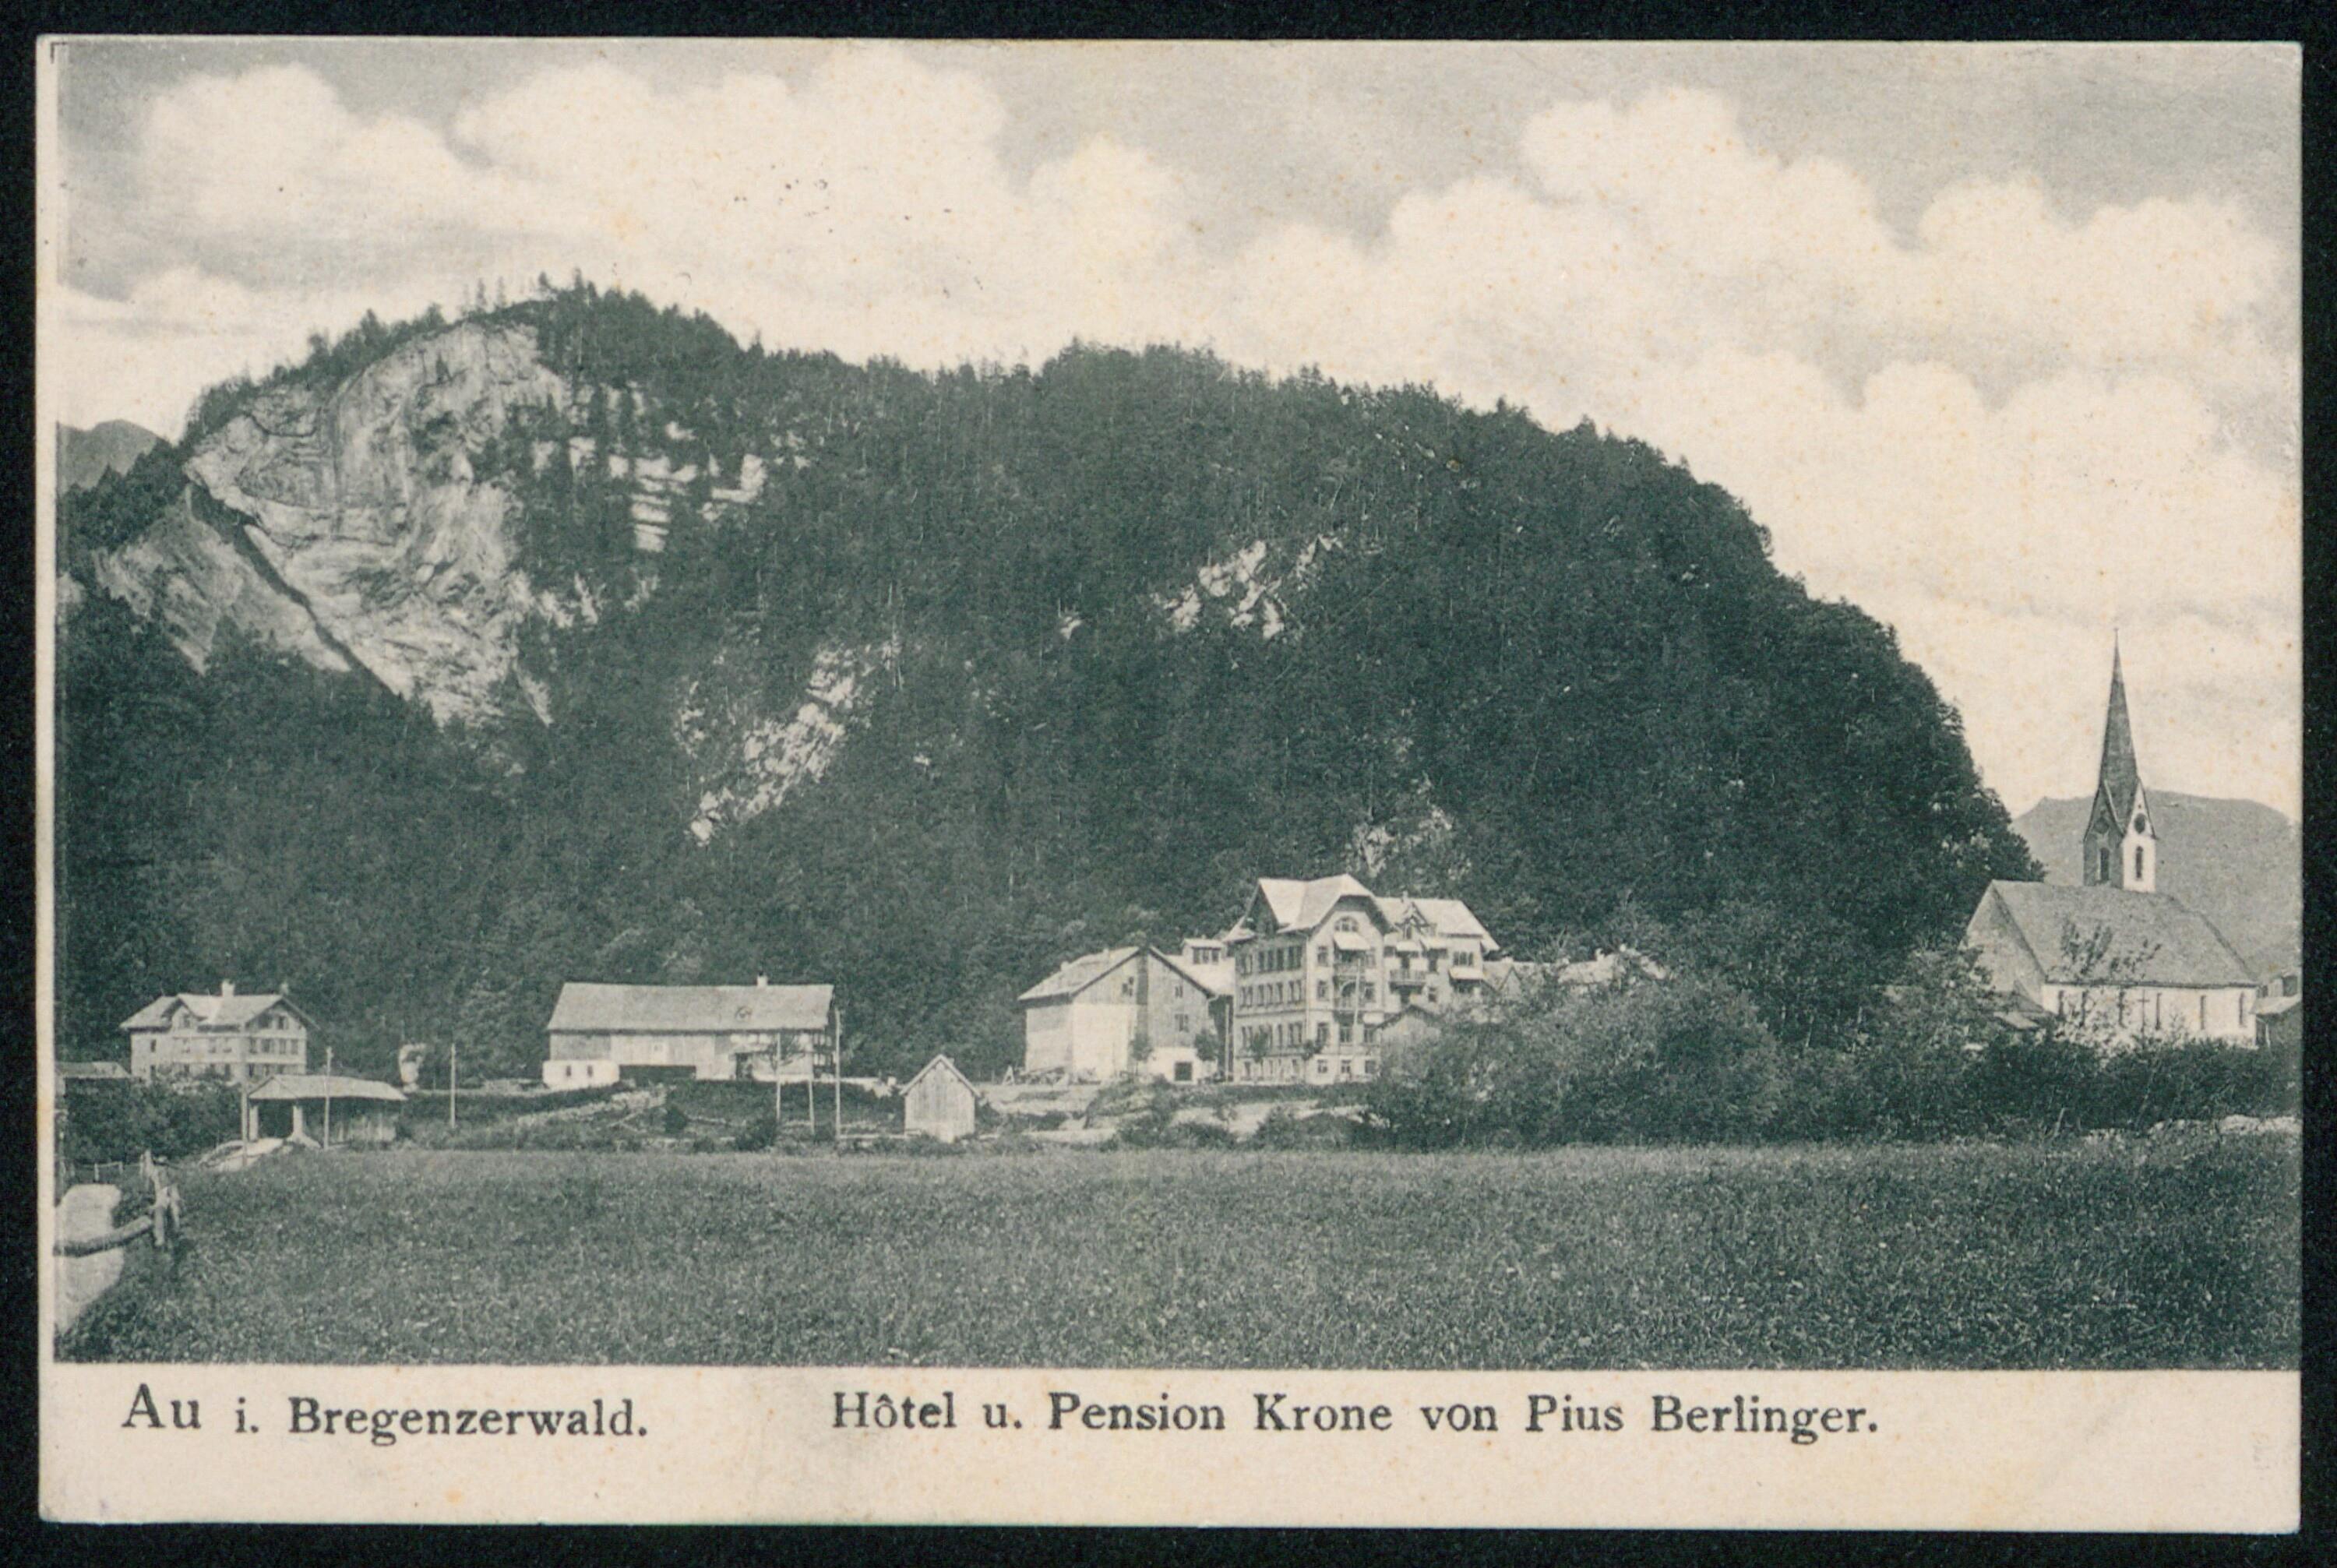 Au i. Bregenzerwald Hôtel u. Pension Krone von Pius Berlinger></div>


    <hr>
    <div class=